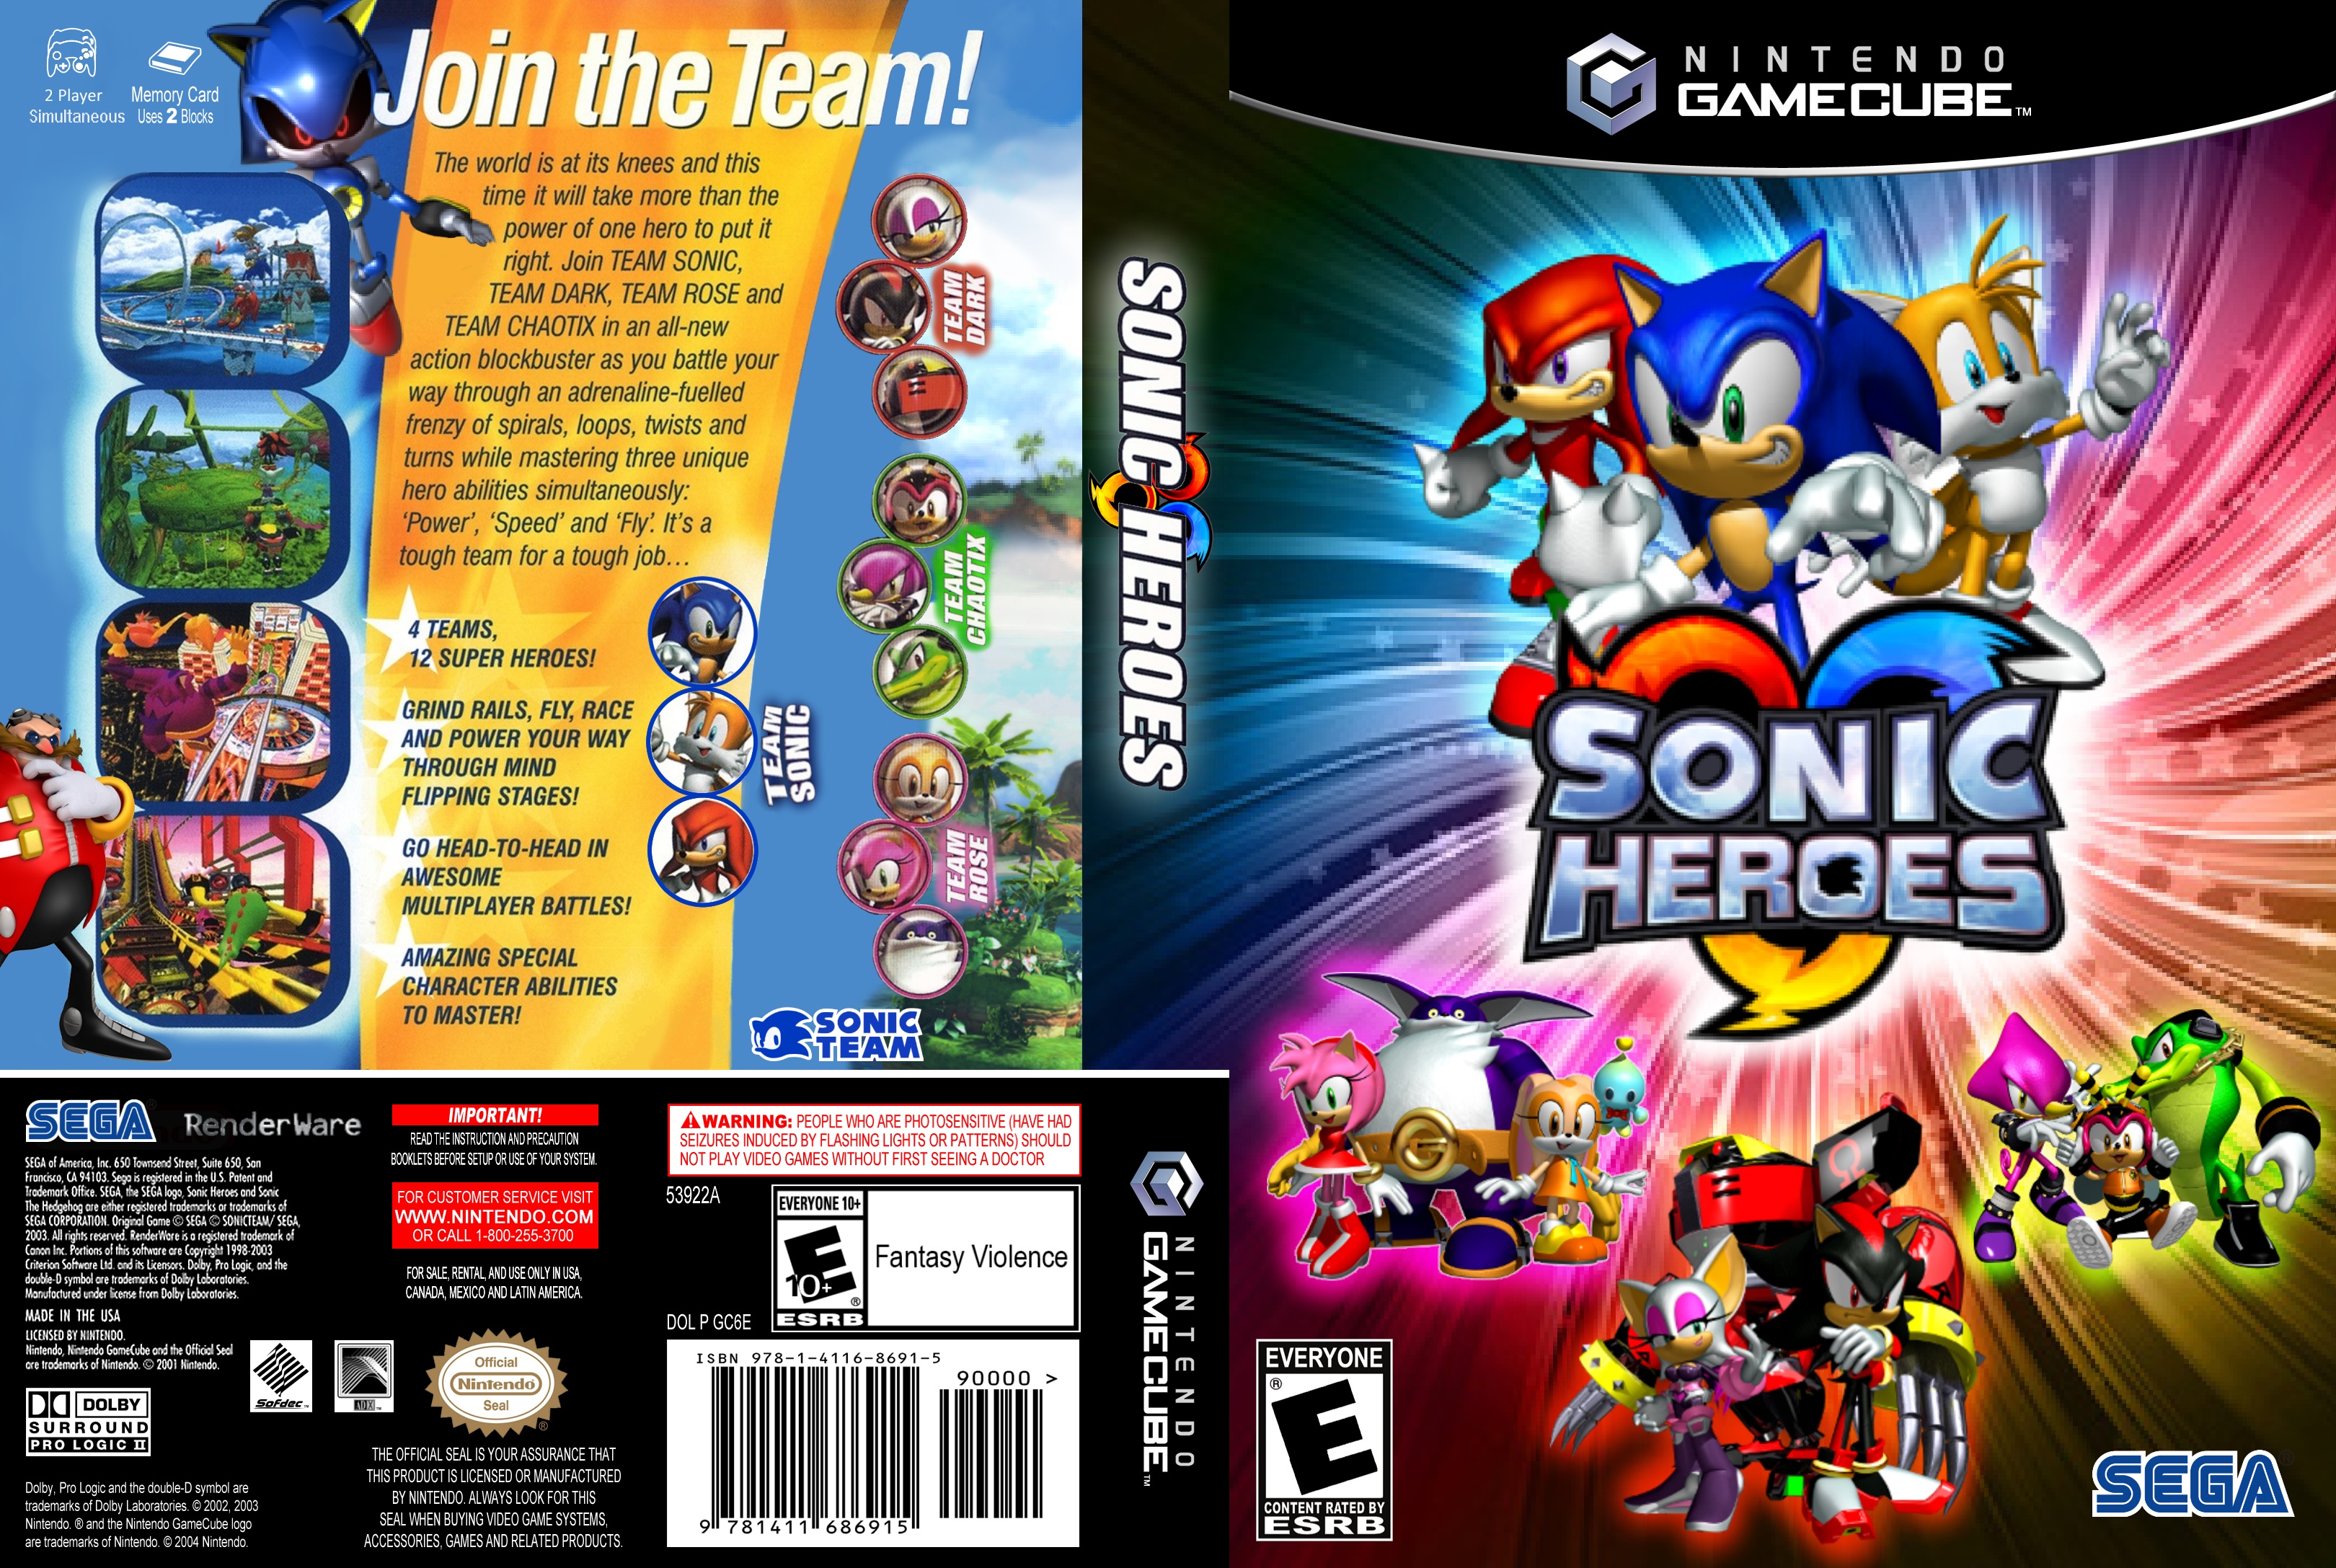 Sonic gamecube rom. Sonic Heroes ps3 диски. Диск игры Nintendo GAMECUBE. Sonic Heroes обложка. Sonic Heroes диск ps2.